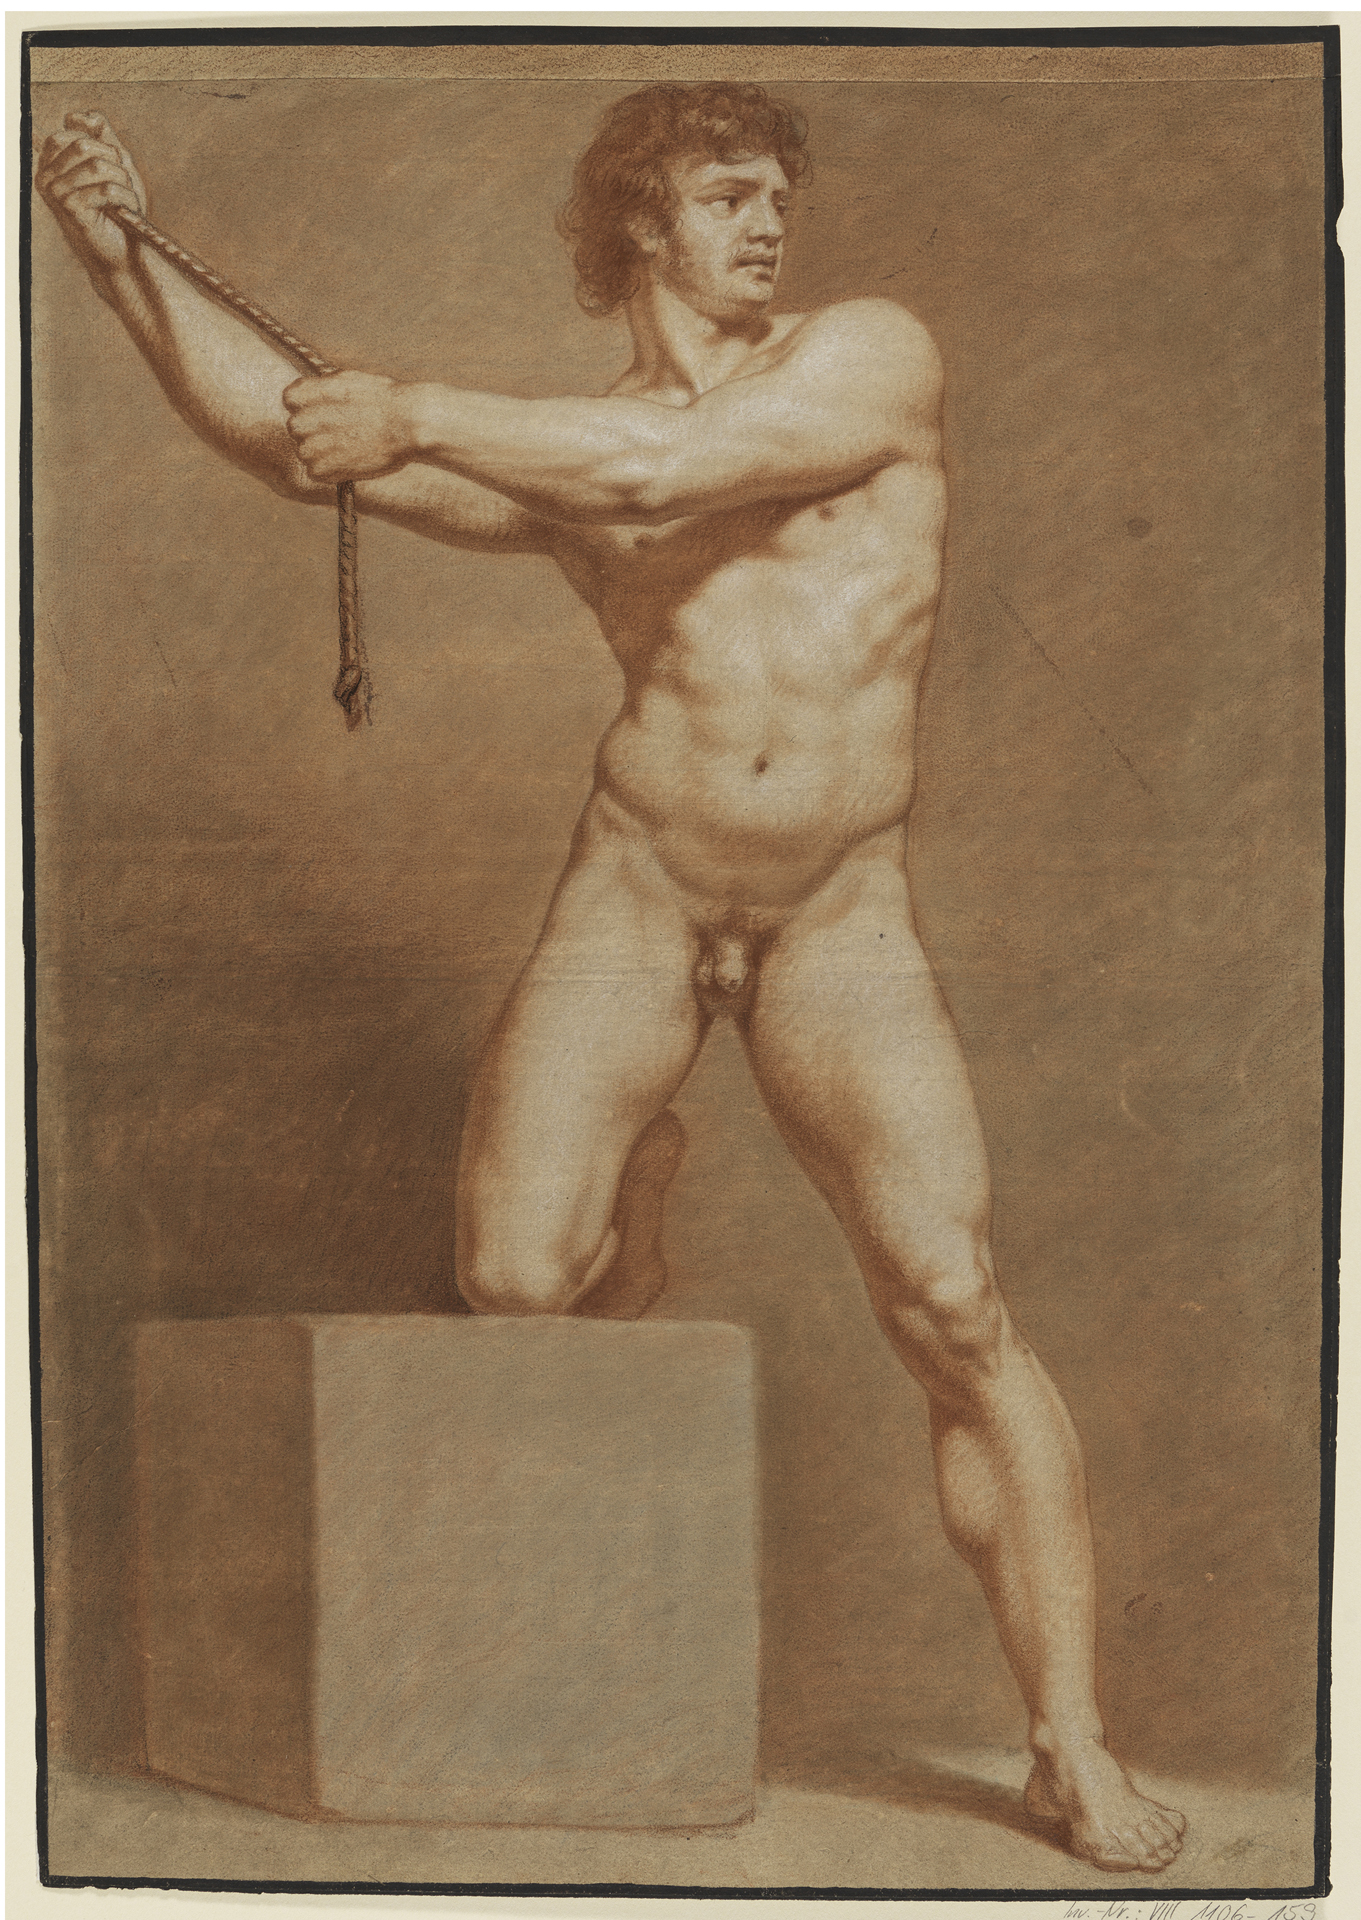 Stehender, rechtes Knie mit abgewinkeltem Bein auf einem Quader aufgestützt, mit beiden nach links gewendeten Armen ein Seil haltend (13 Blätter mit verschiedenen Aktstudien nach A. R. Mengs, Blatt 4)